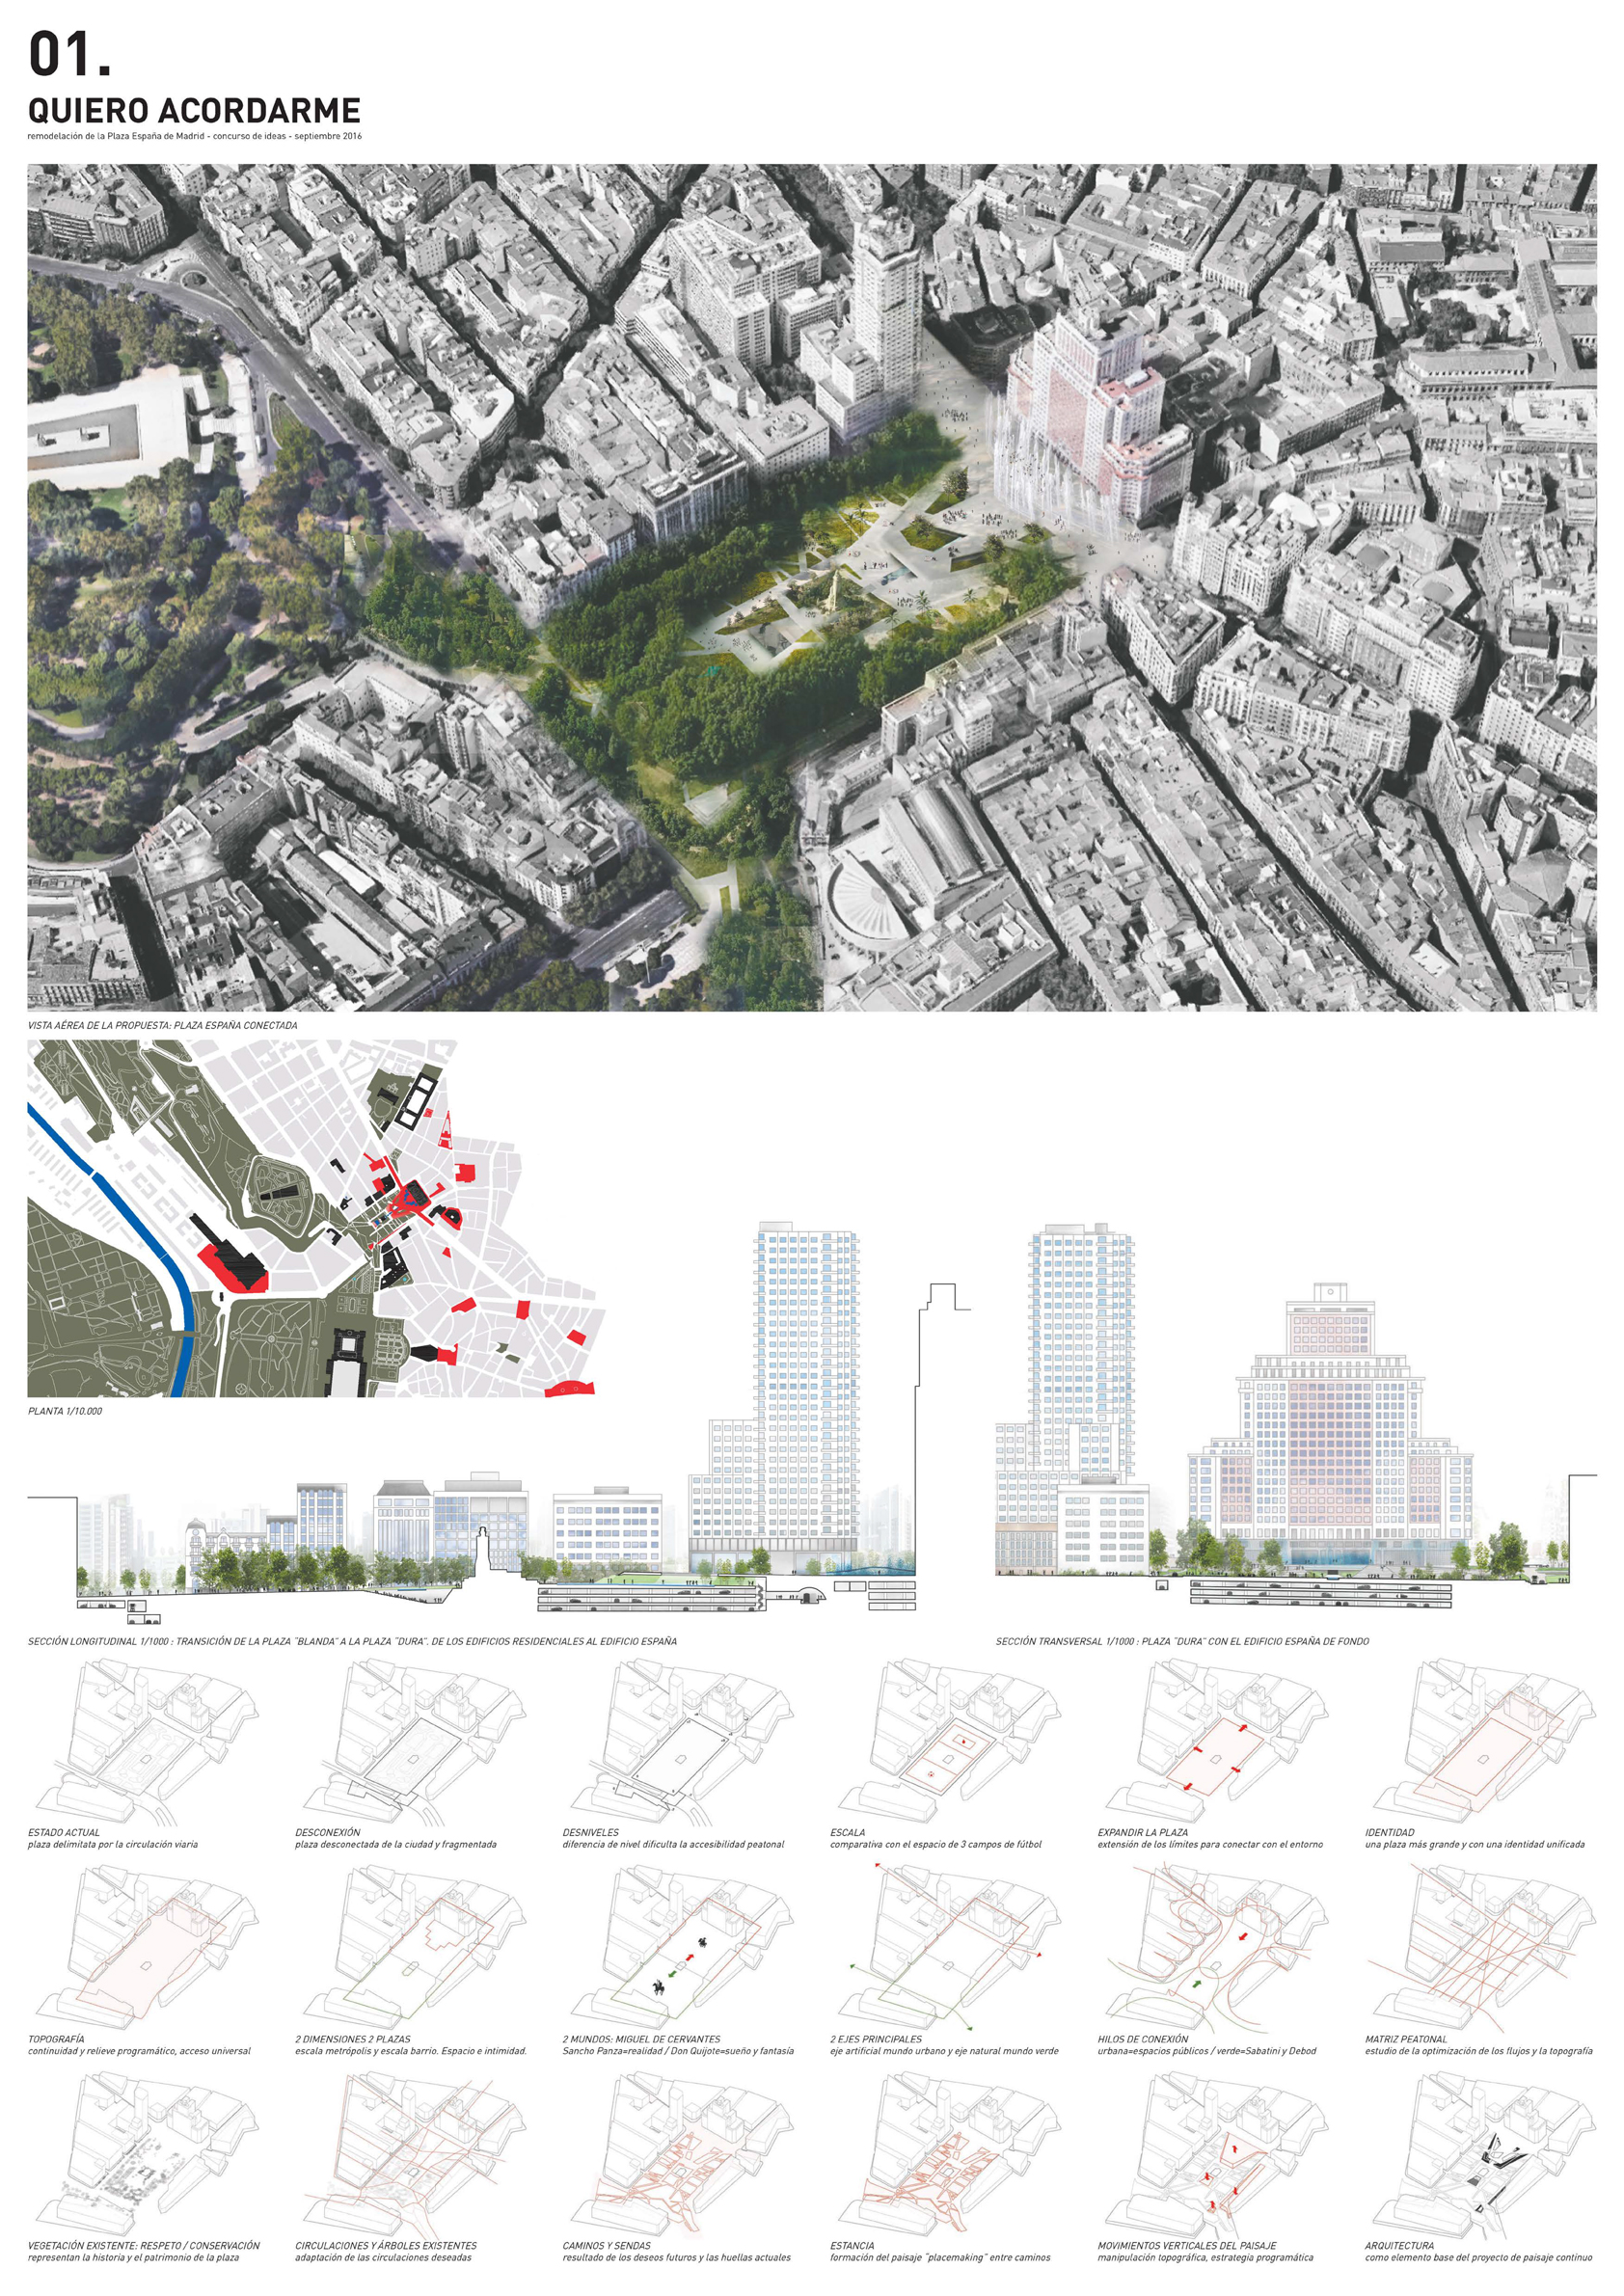 Proyecto 11 para la Remodelación de Plaza España: QUIERO ACORDARME